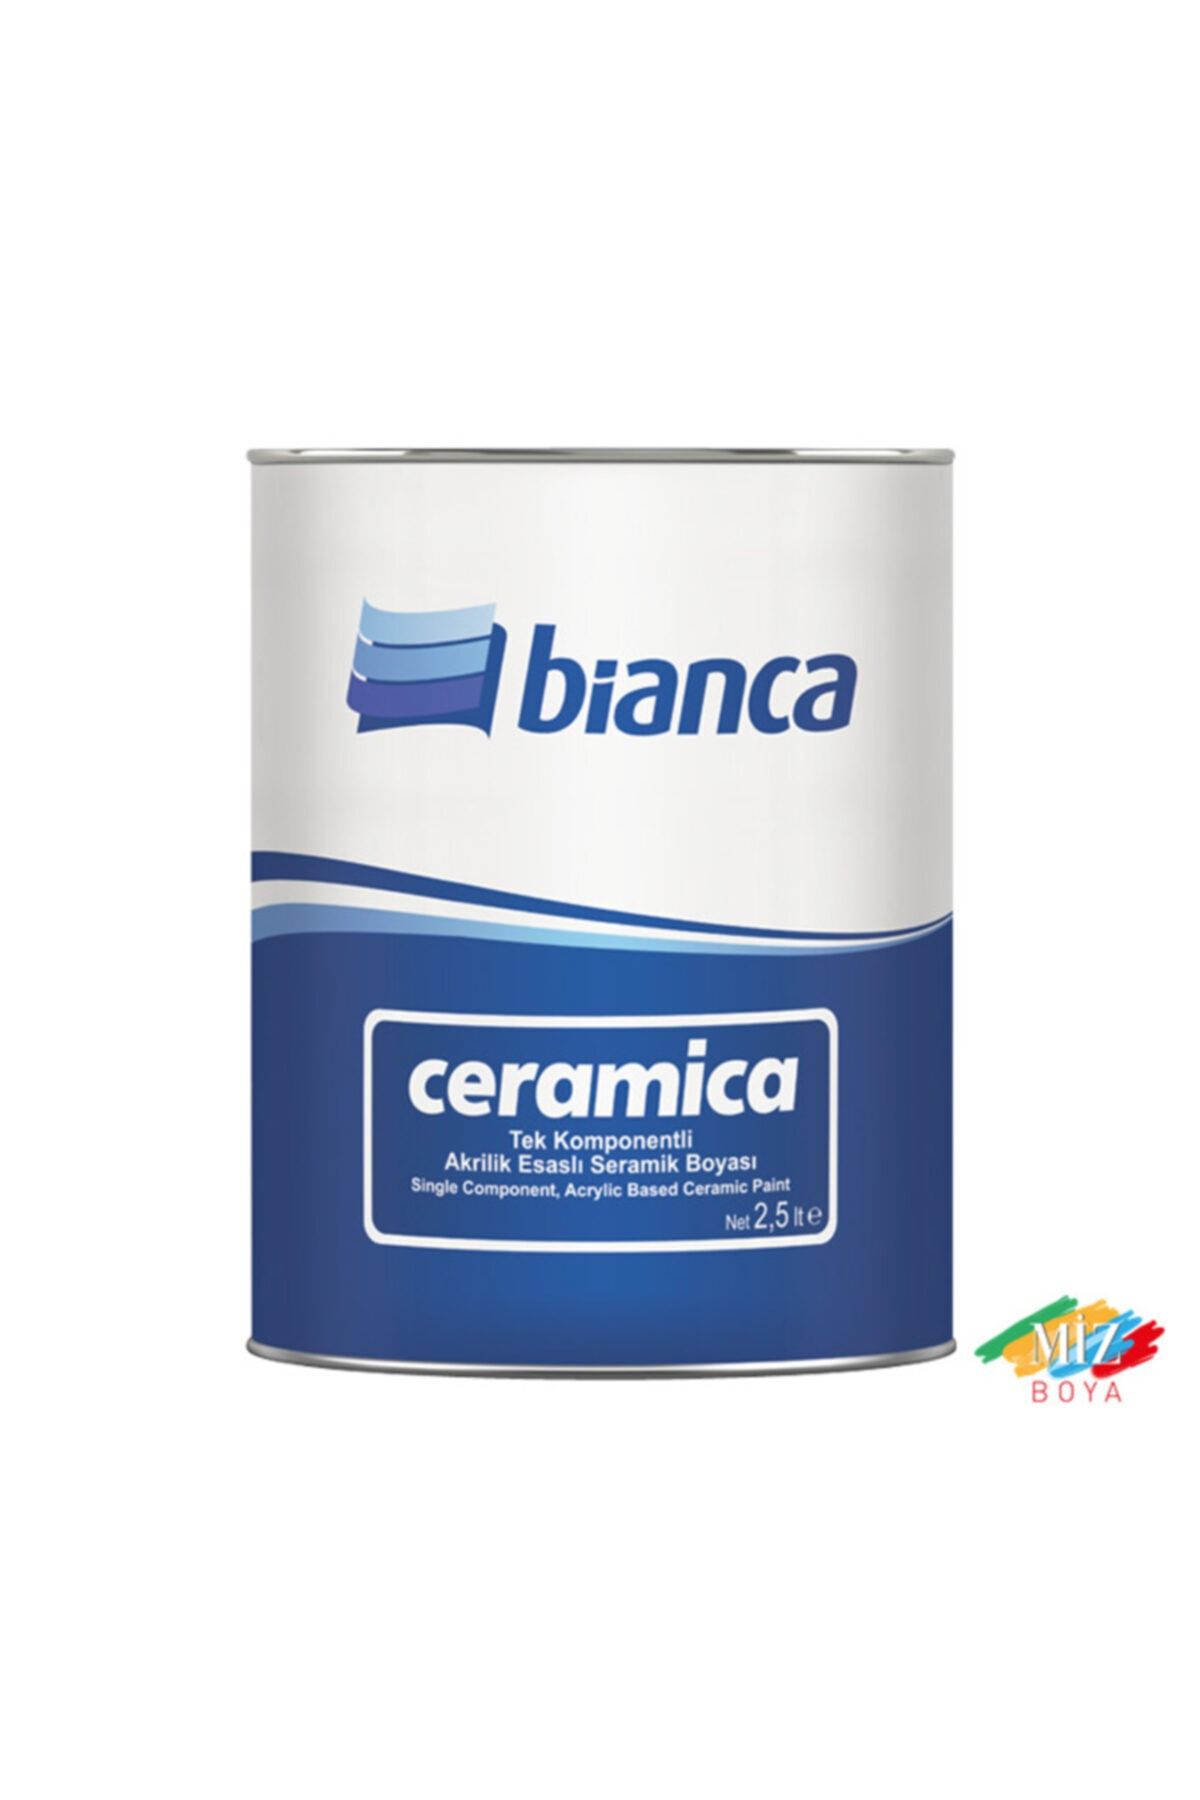 Bianca Ceramica Seramik Boyası Açık Meşe -2,5 Lt